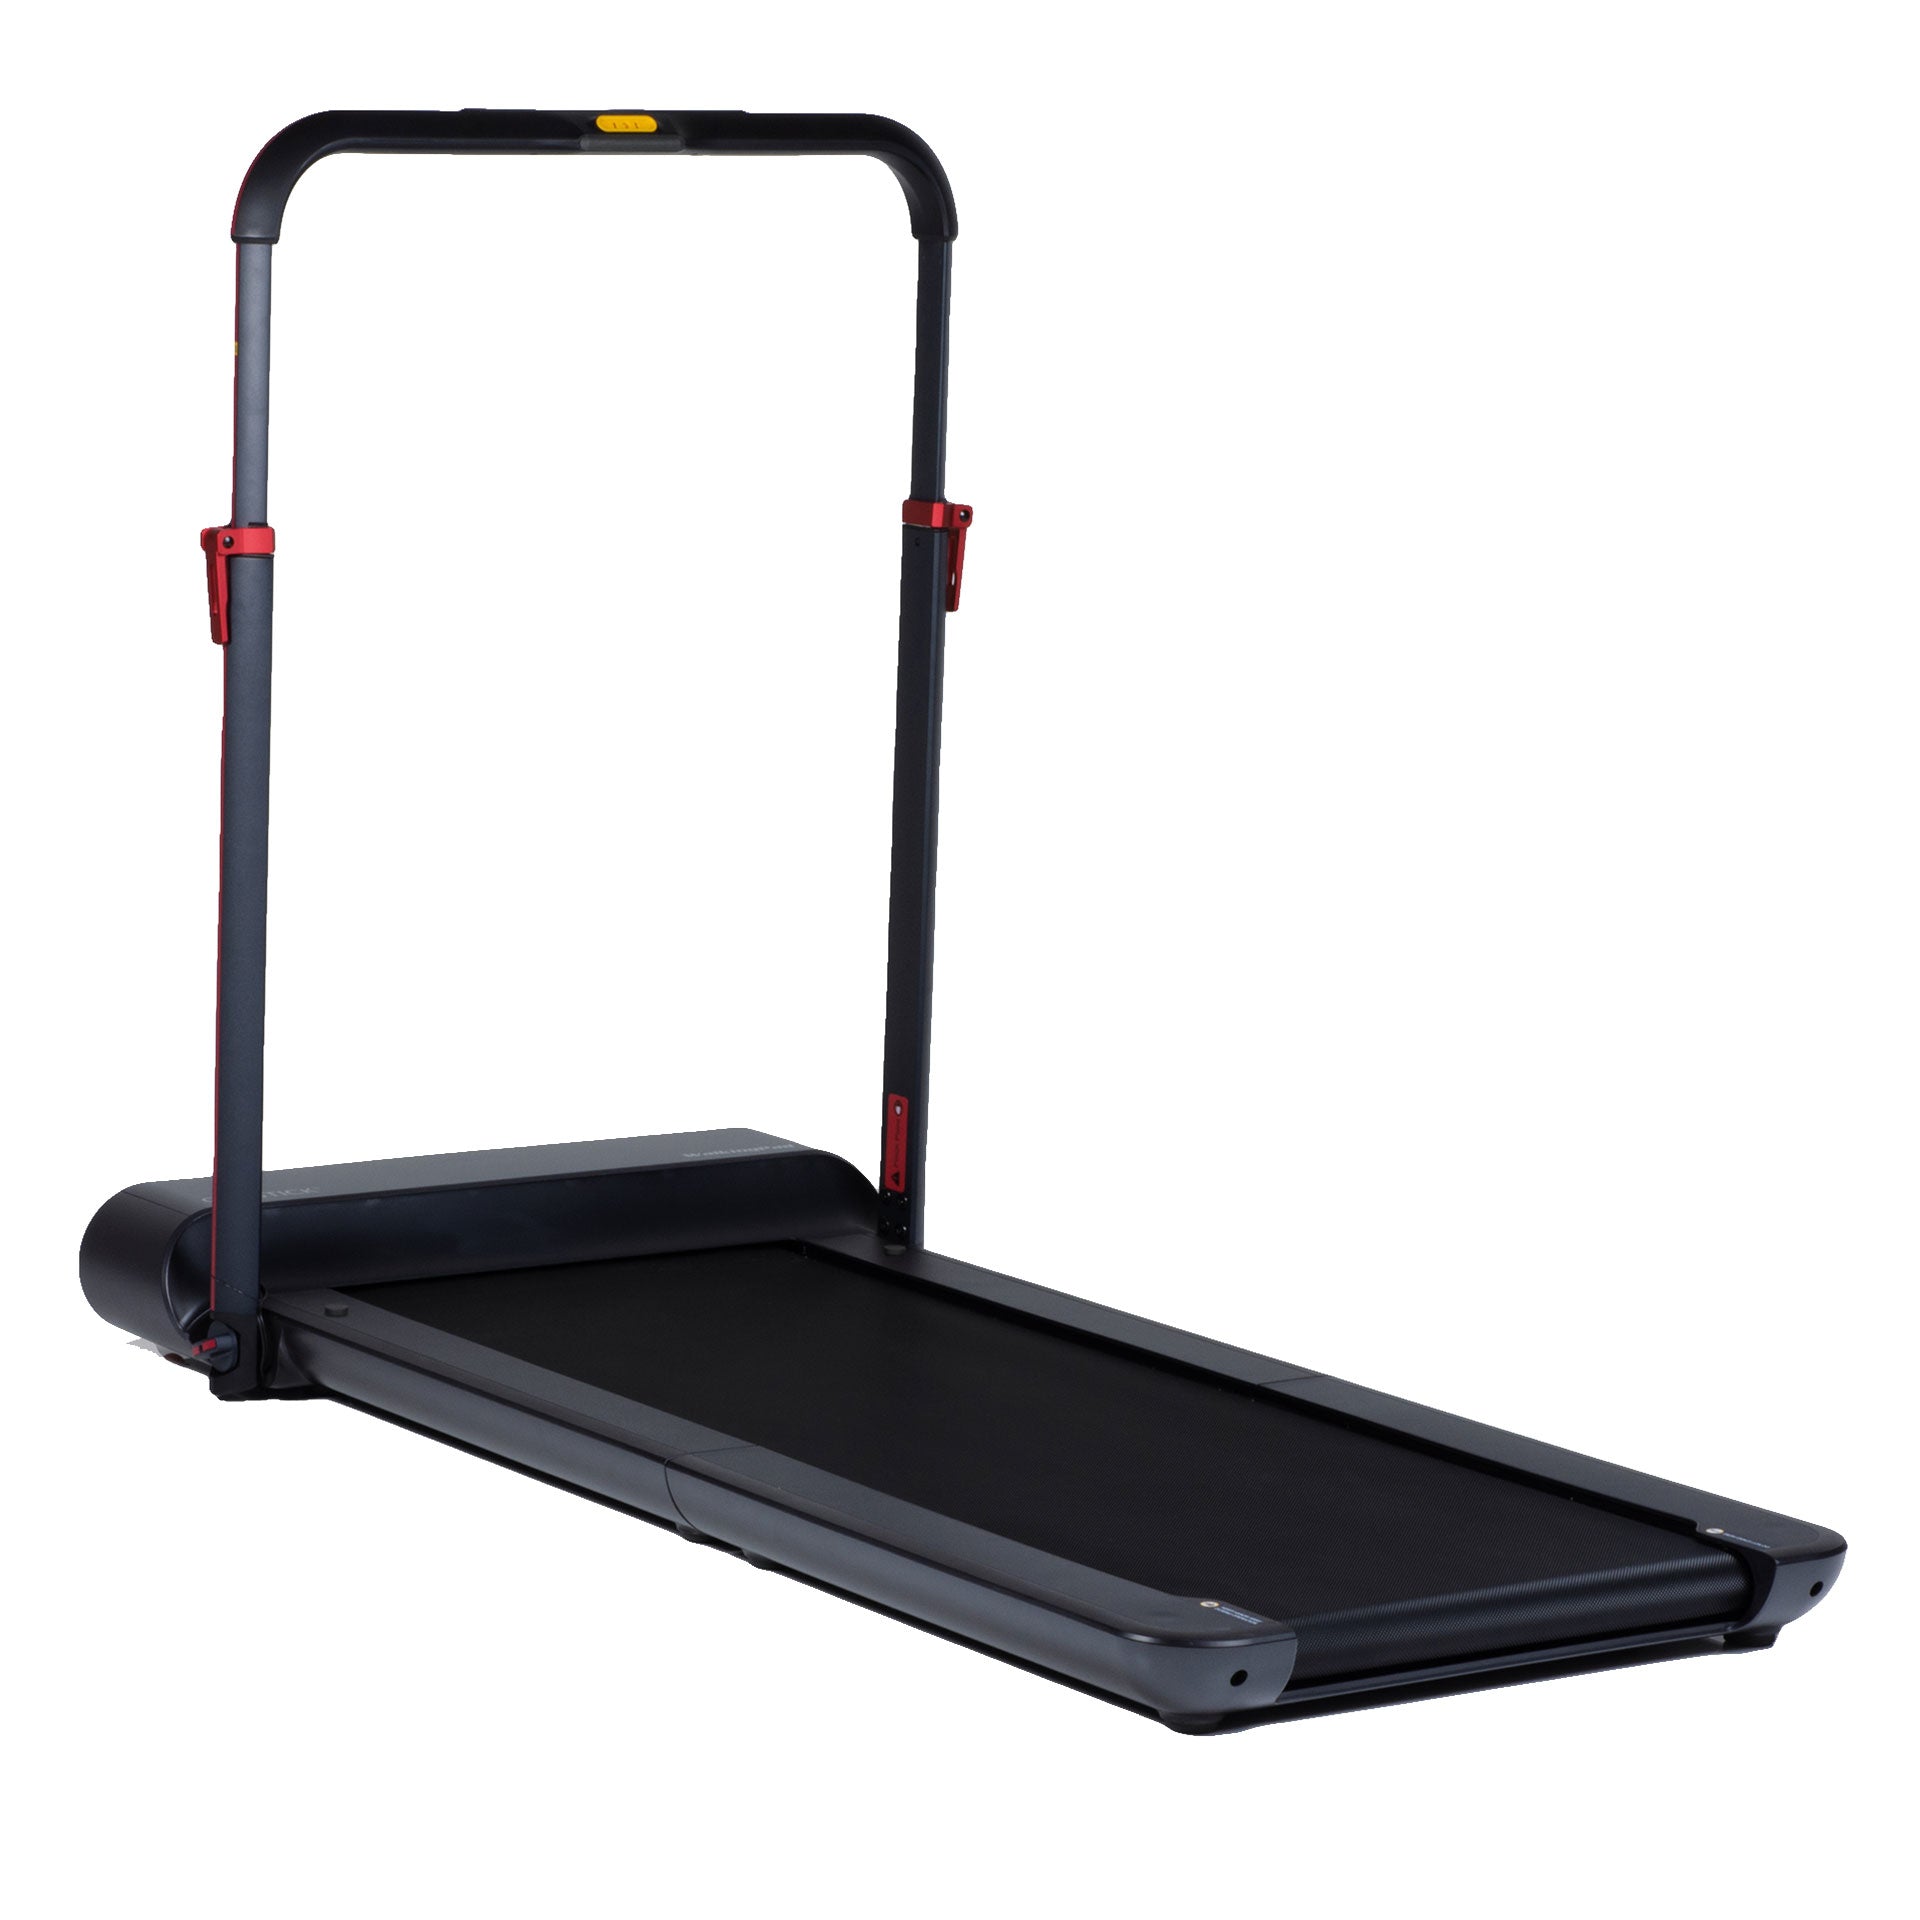 WalkingPad Pro treadmill